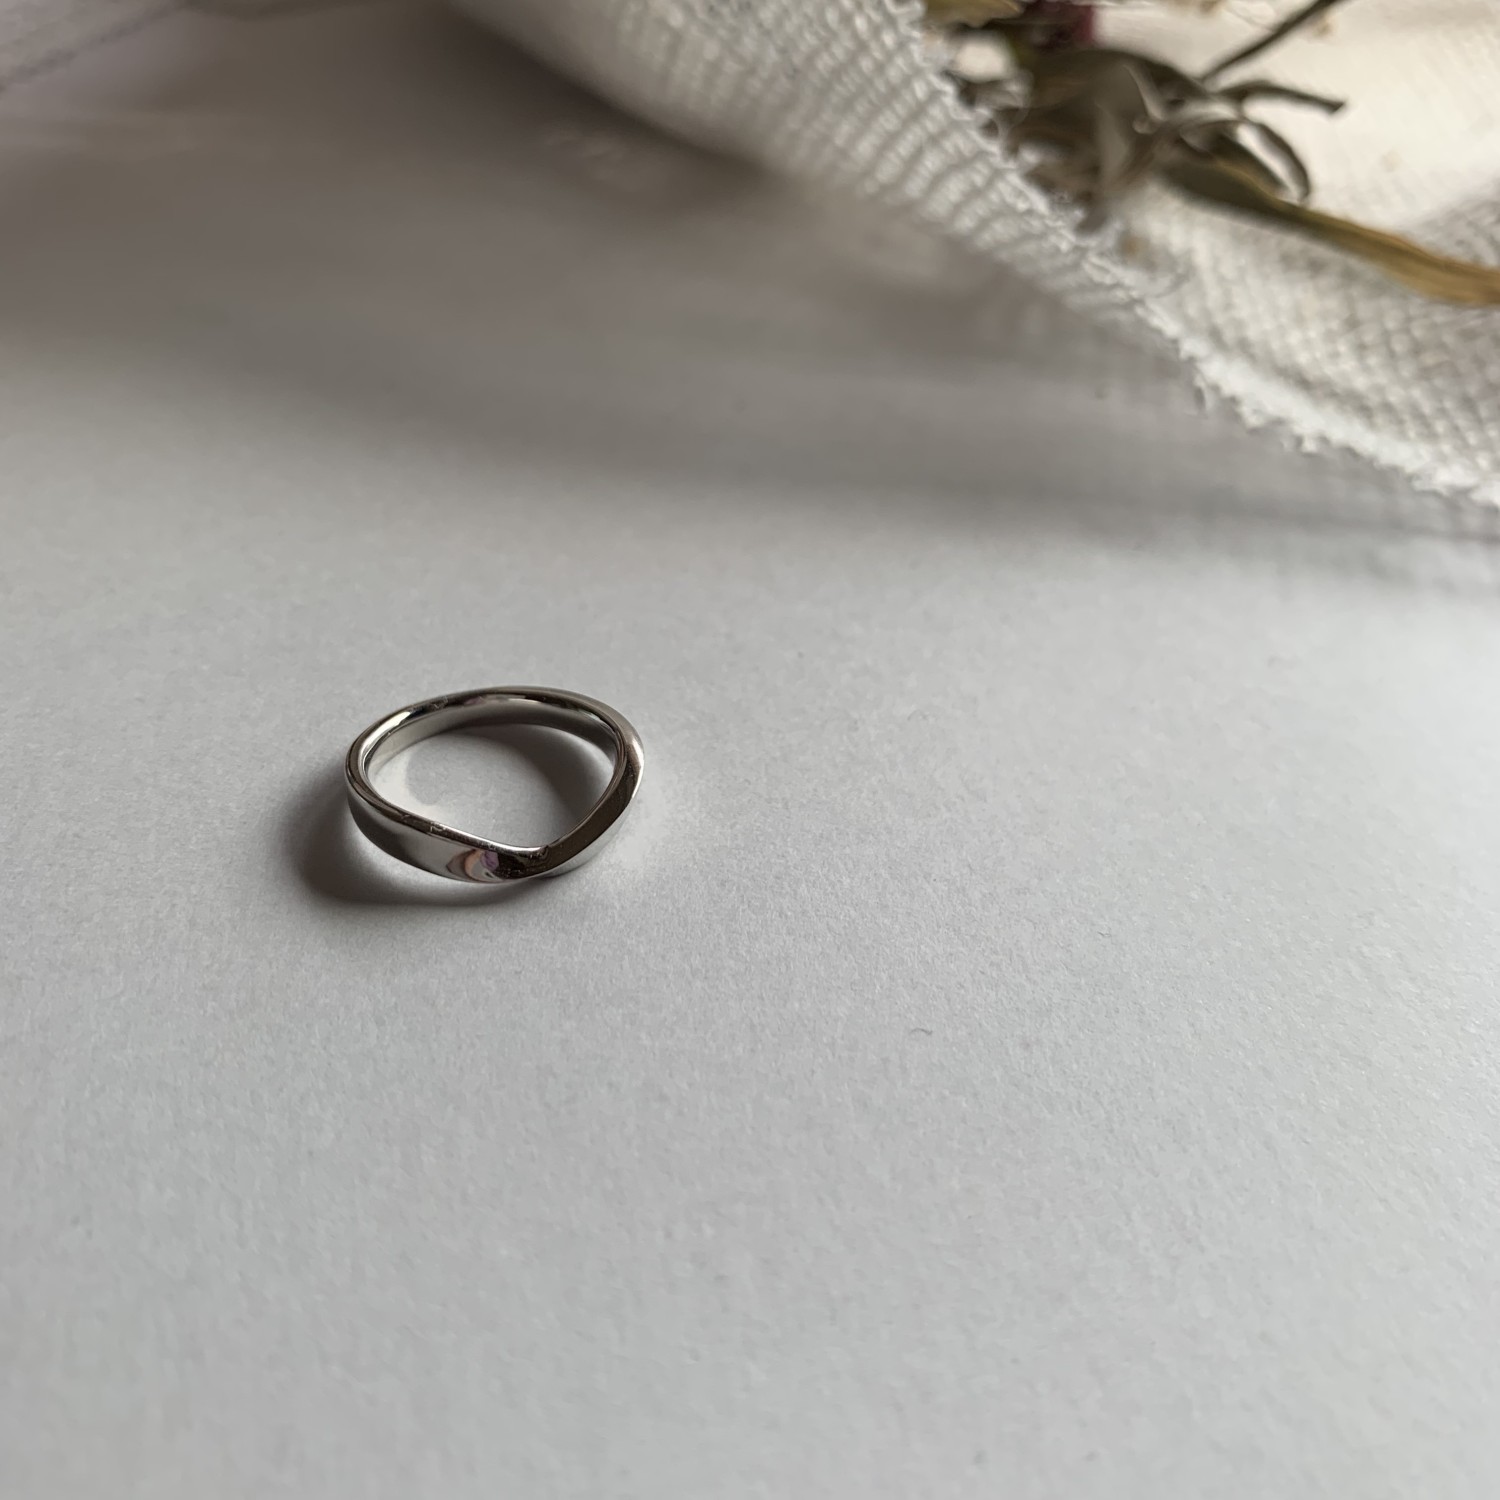 結婚指輪No5 3.0 プラチナ(幅3.0mm / Pt950) V字デザイン | 結婚指輪の 